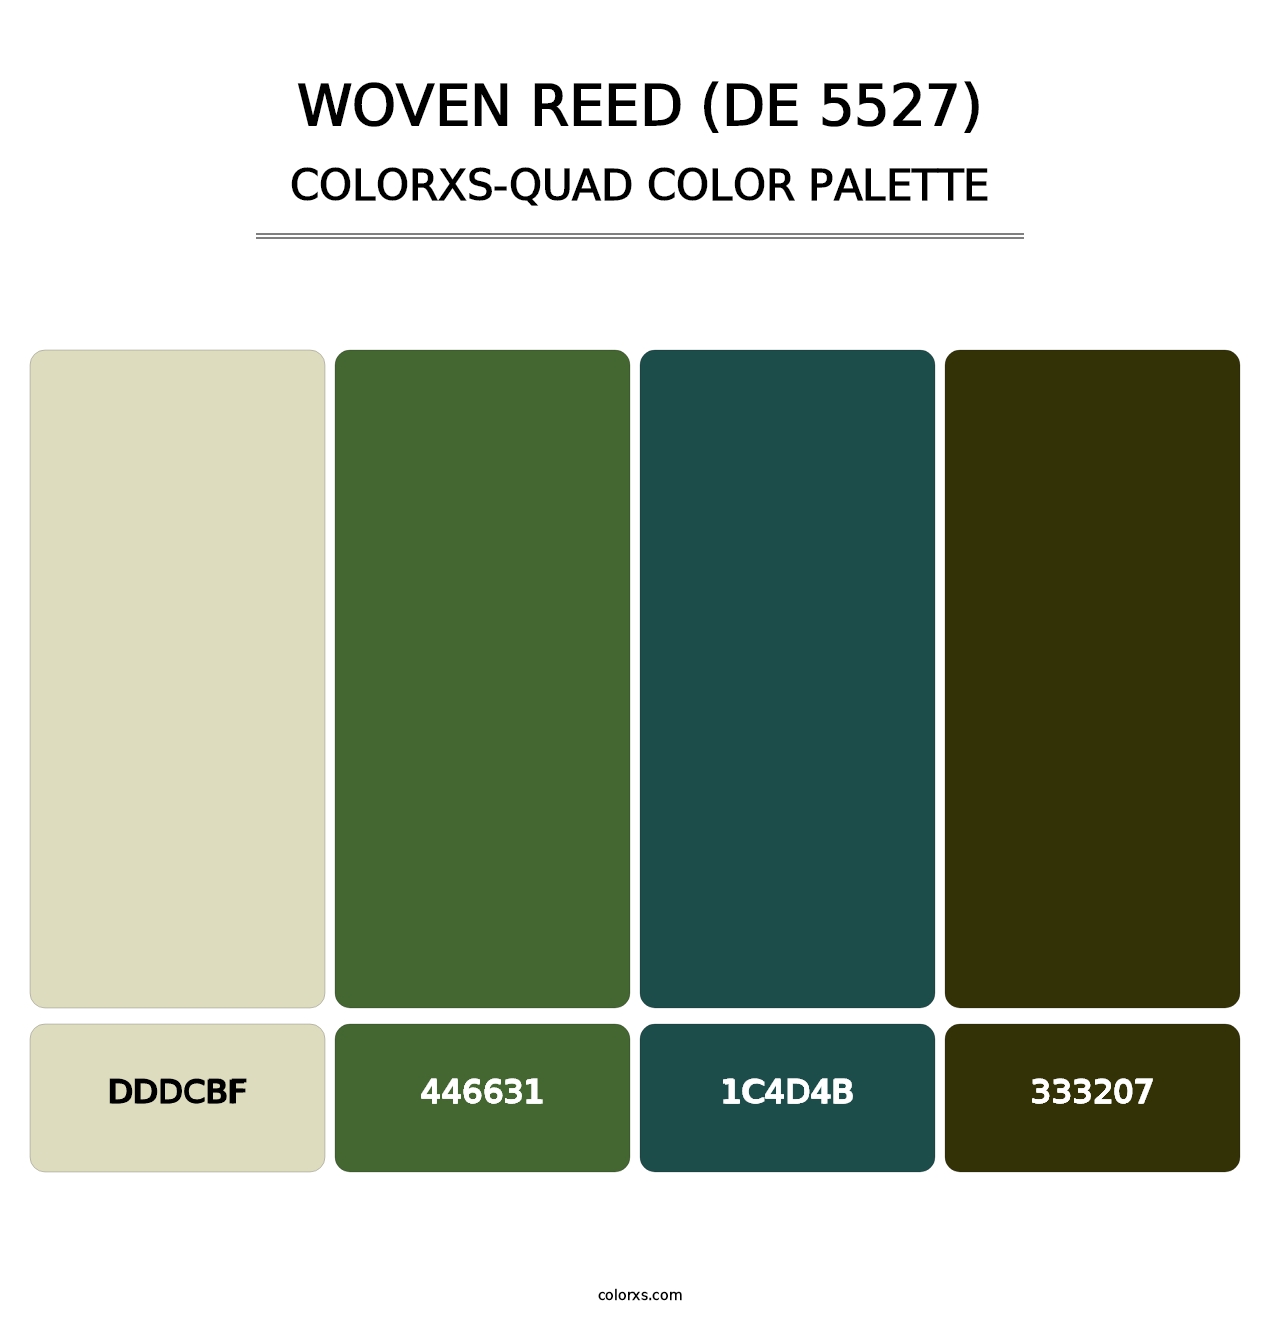 Woven Reed (DE 5527) - Colorxs Quad Palette